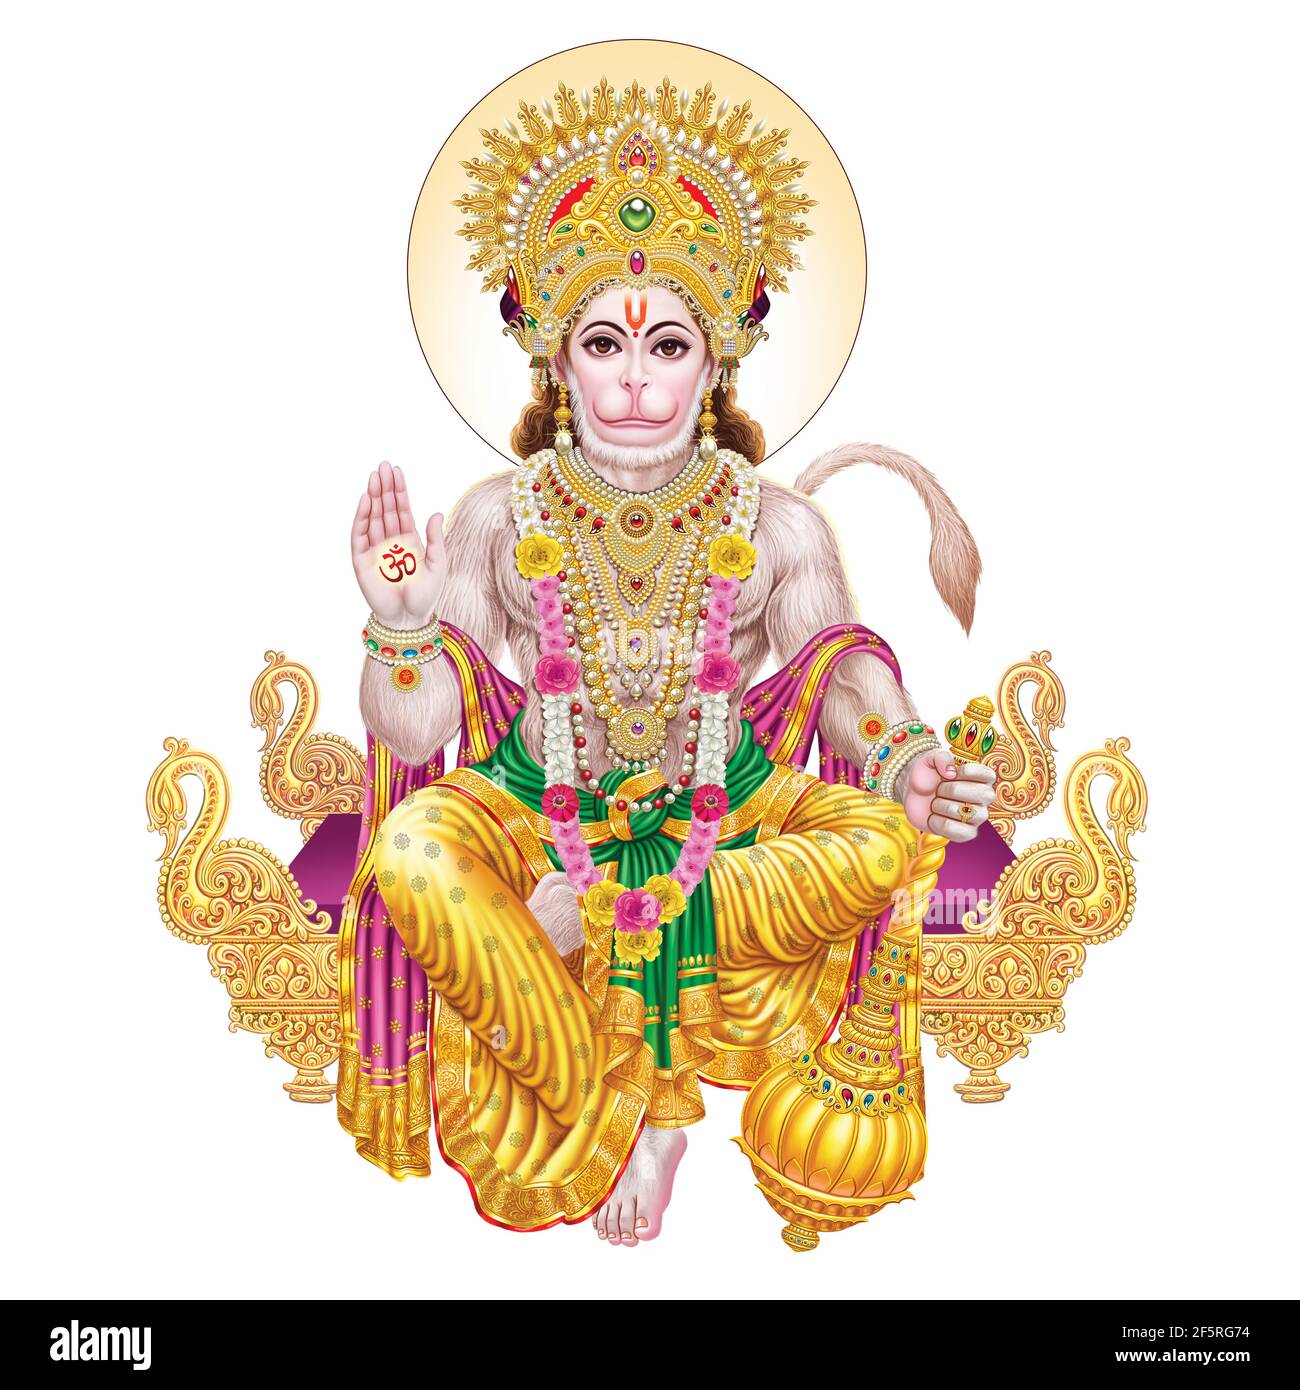 Durchsuchen Sie hochauflösende Stockbilder von Lord Hanuman Stockfoto